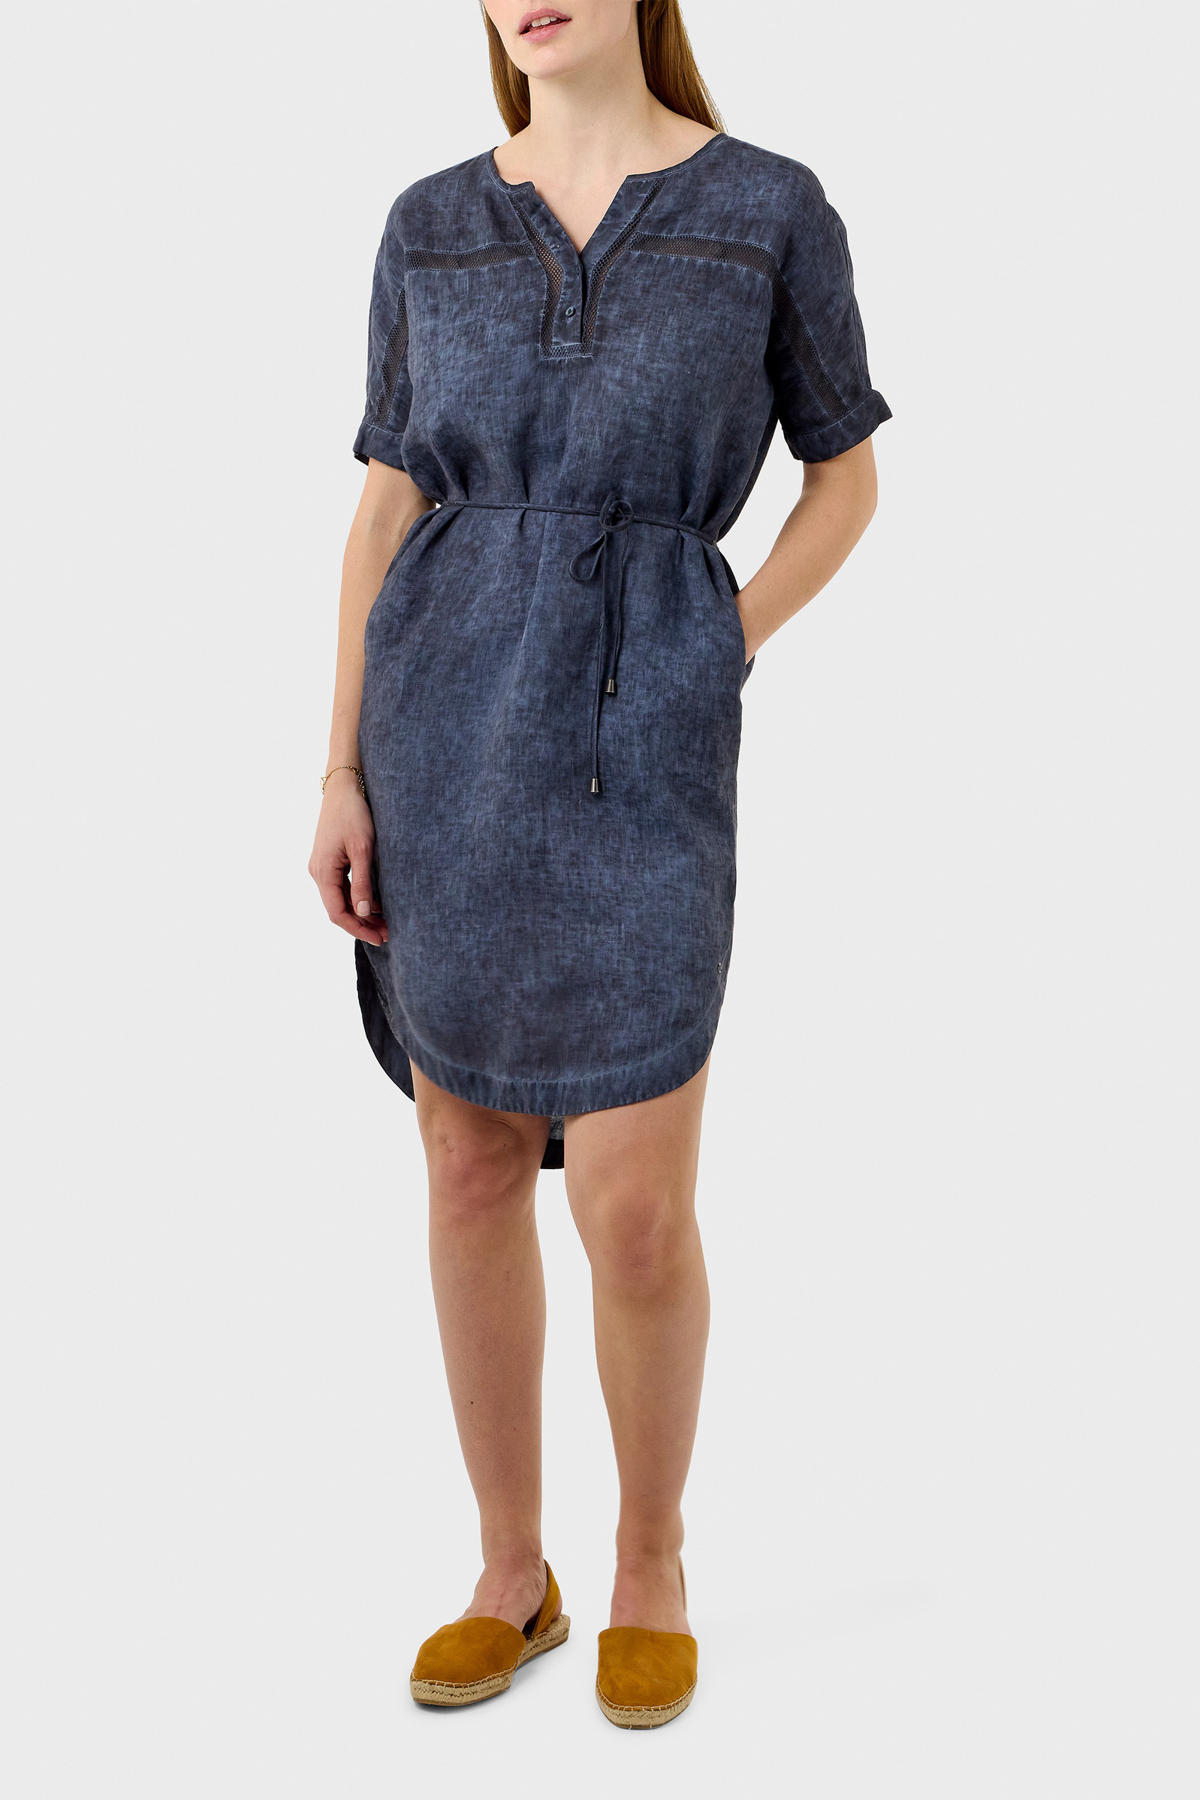 hoop precedent uitdrukking Sandwich jurk met open detail donkerblauw | wehkamp